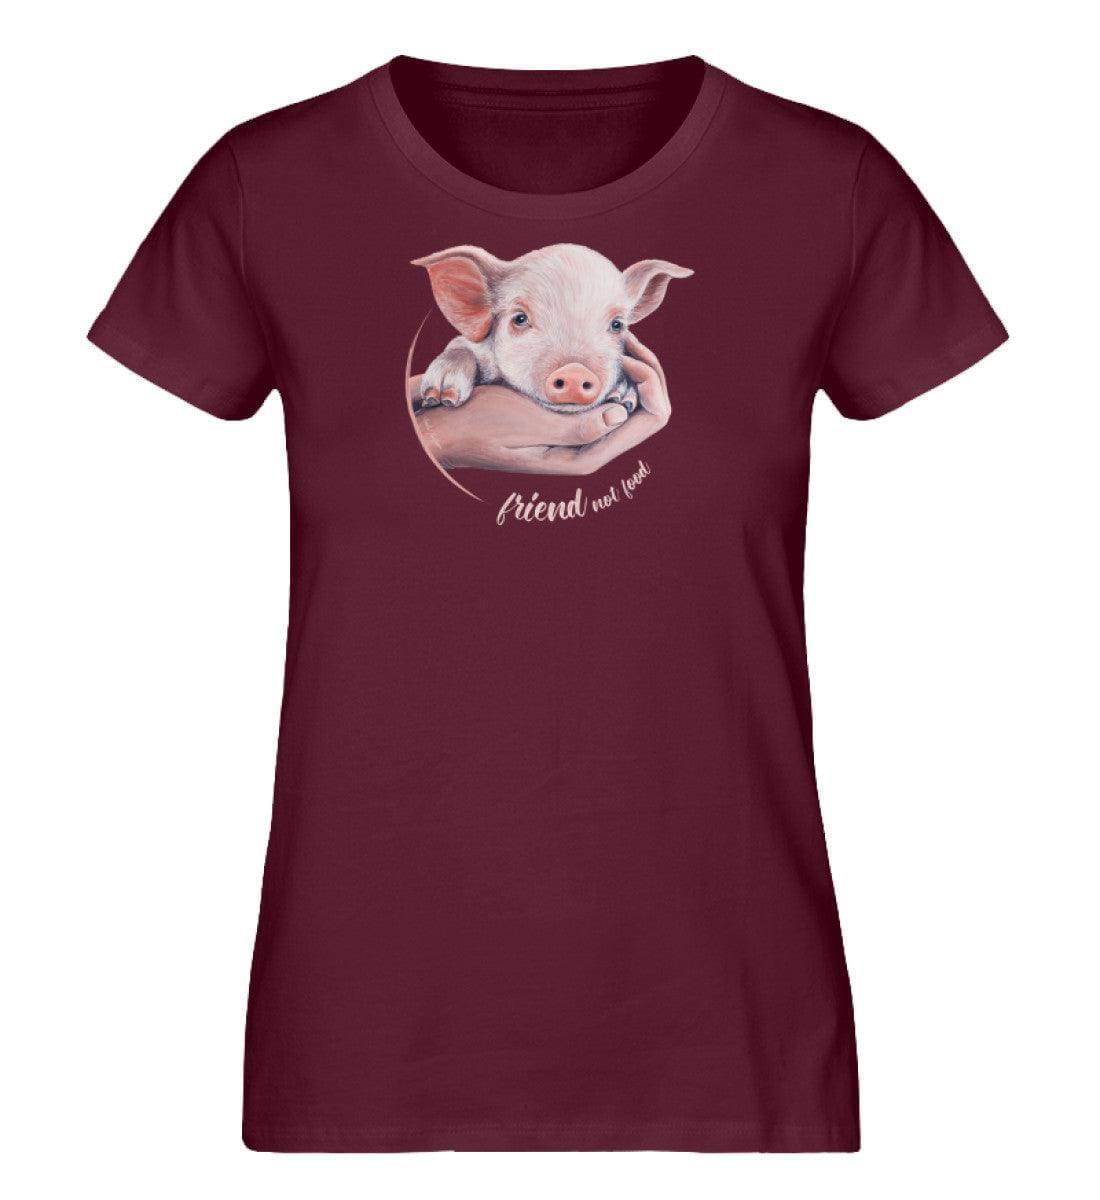 Friend not Food Schwein [Chantal Kaufmann] - Damen Organic Shirt - Team Vegan © vegan t shirt